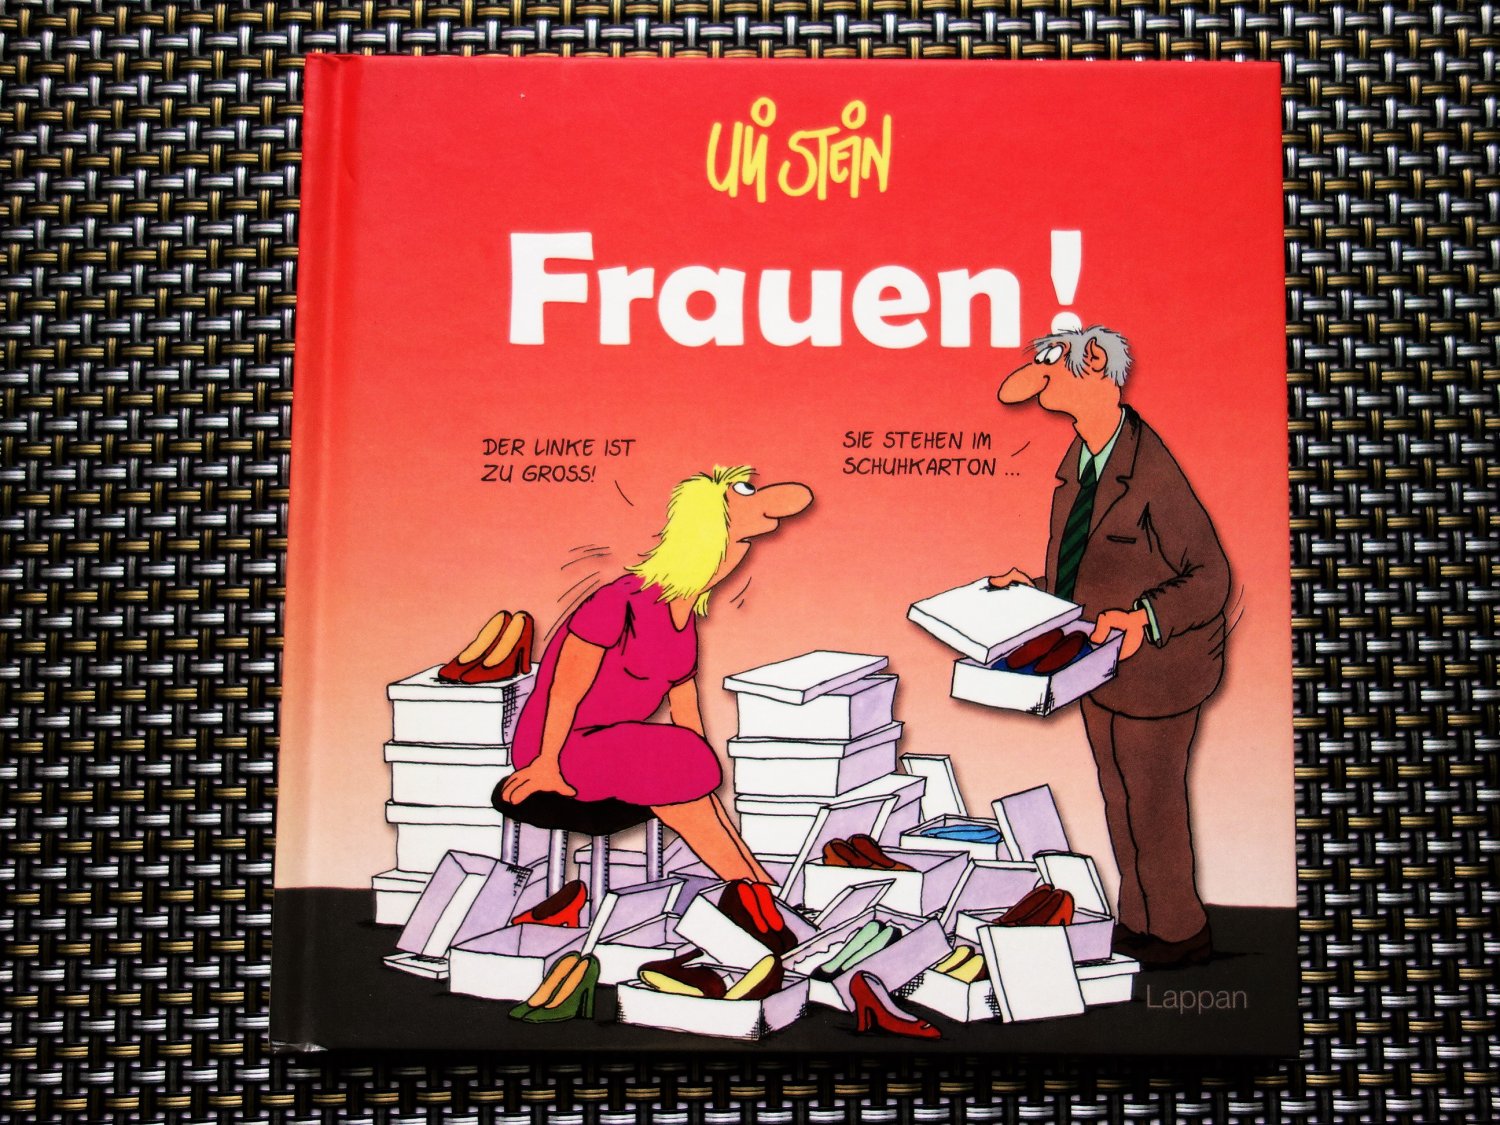 Uli Stein Frauen Buch Cartoon-Buch Hardcover 